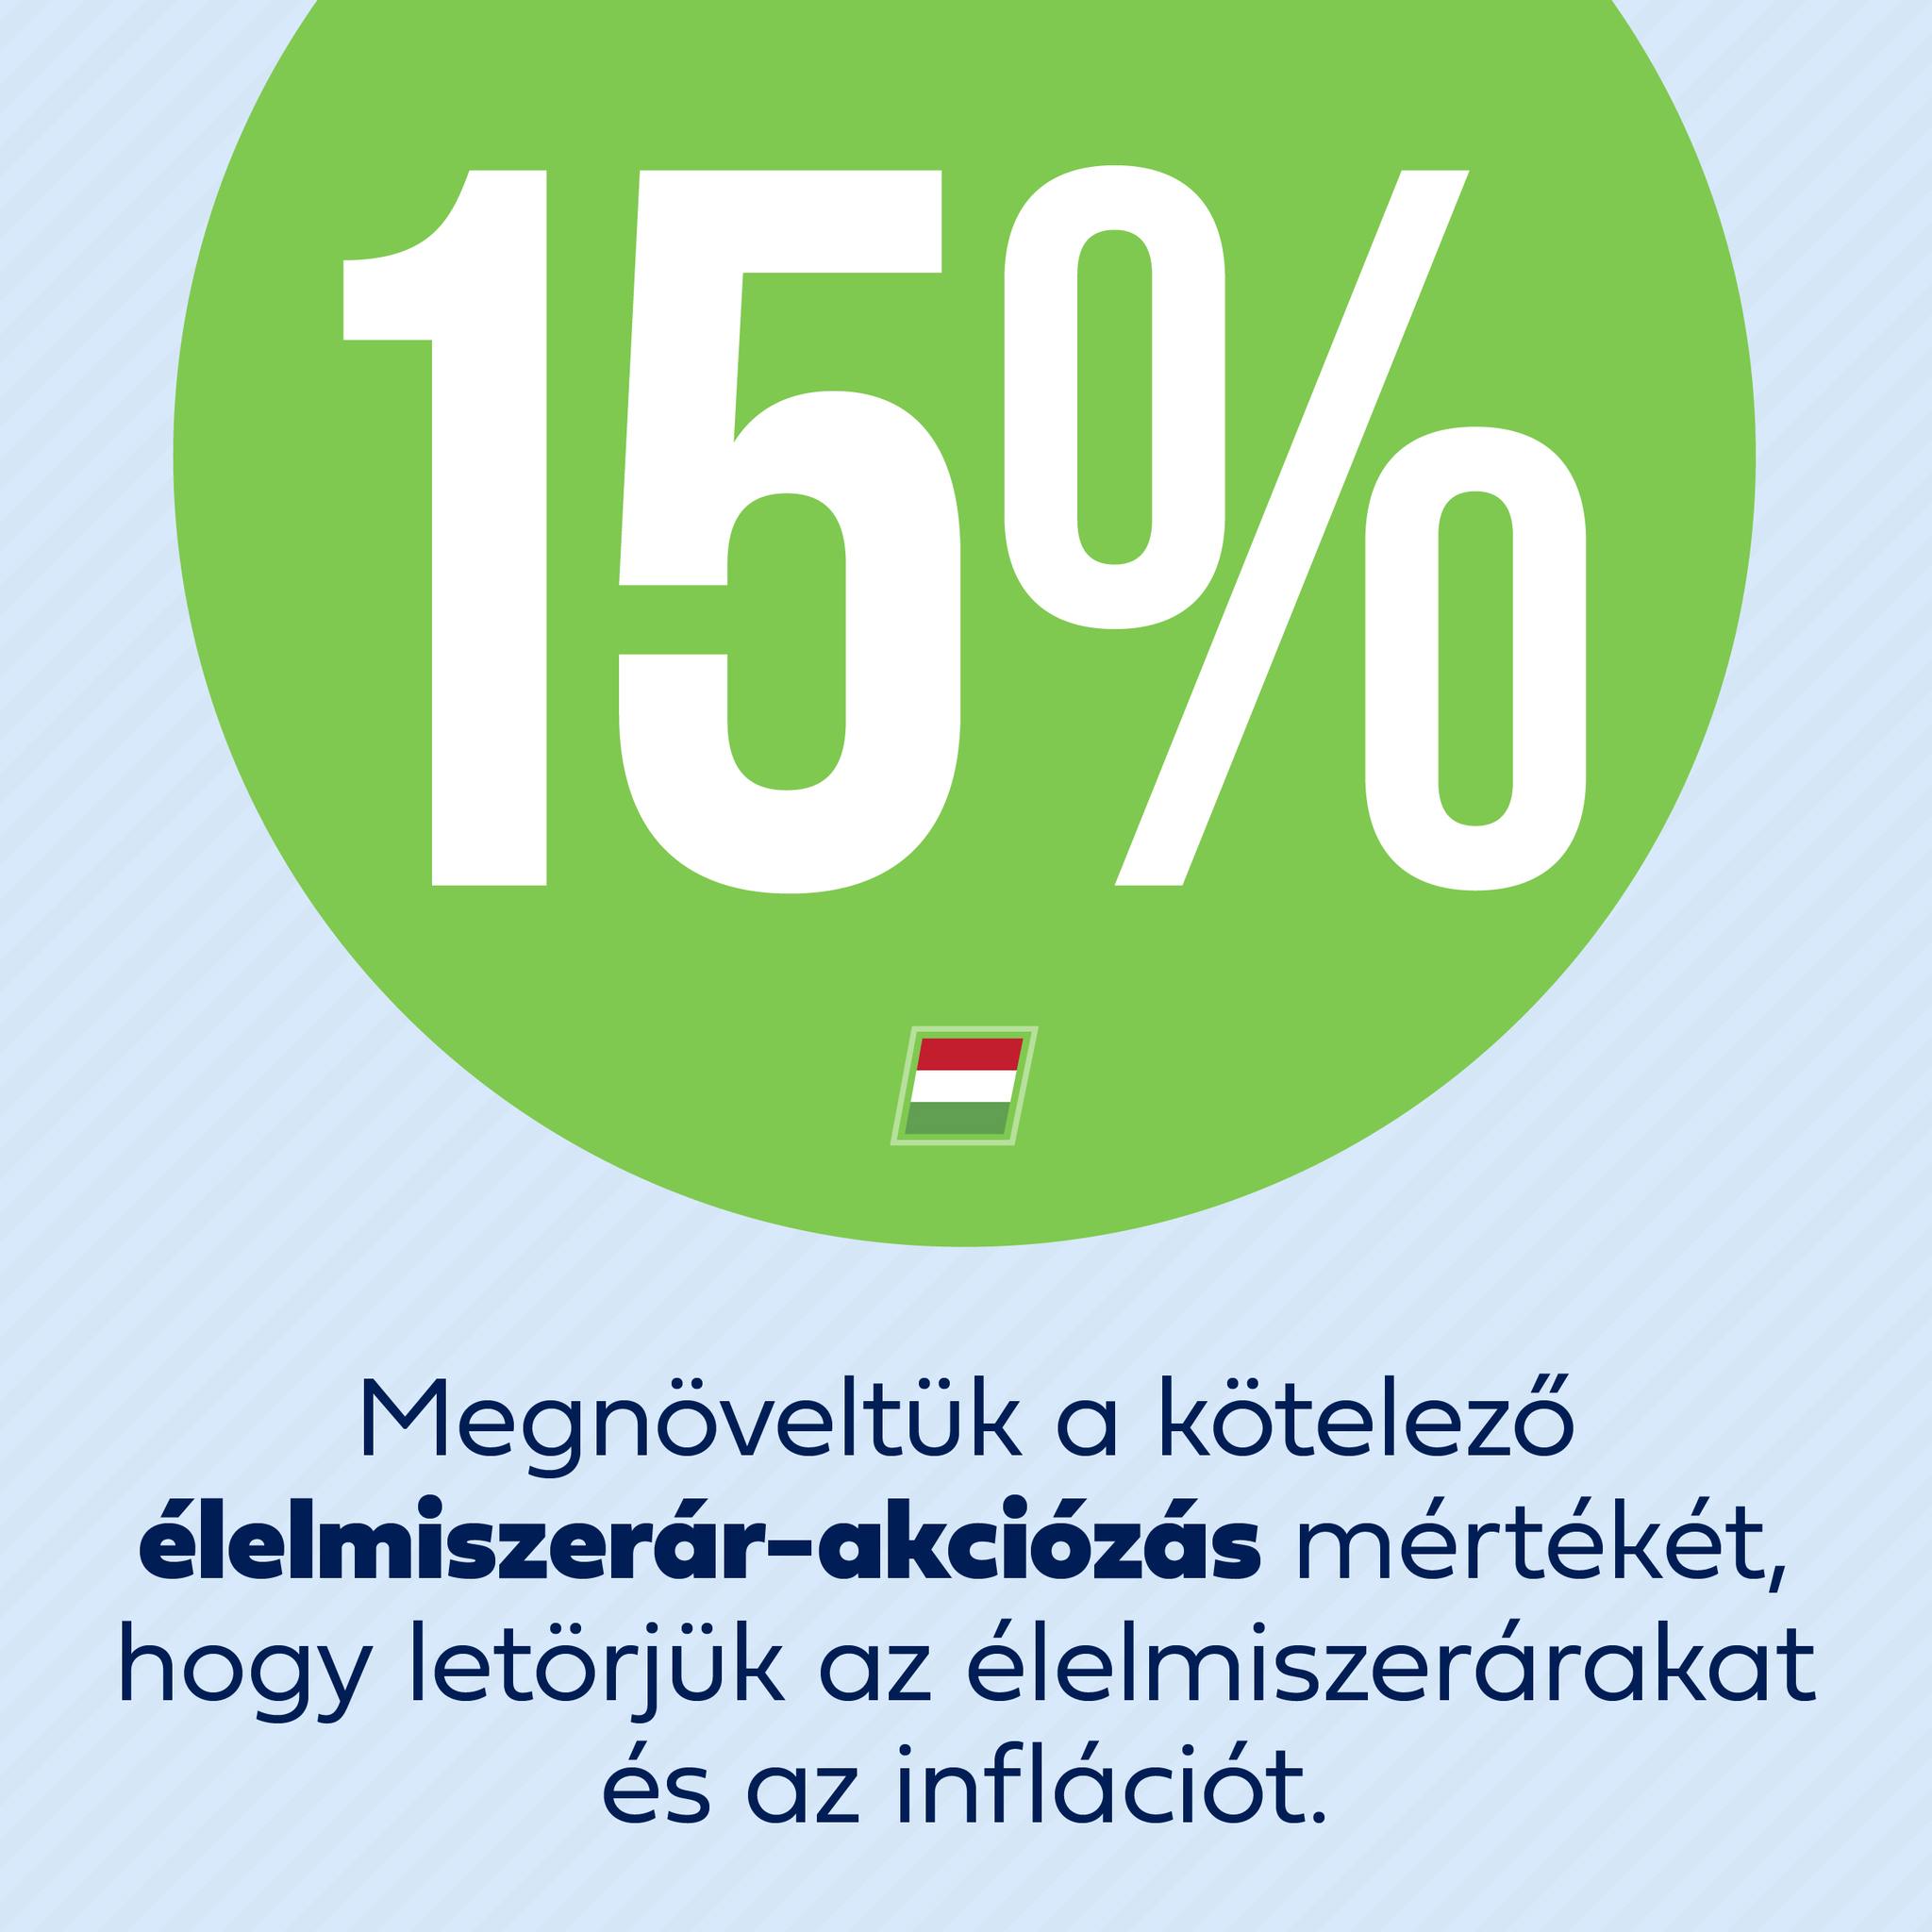 Folytatjuk az inflációcsökkentő intézkedéseket, hogy segítsük a magyar családokat.